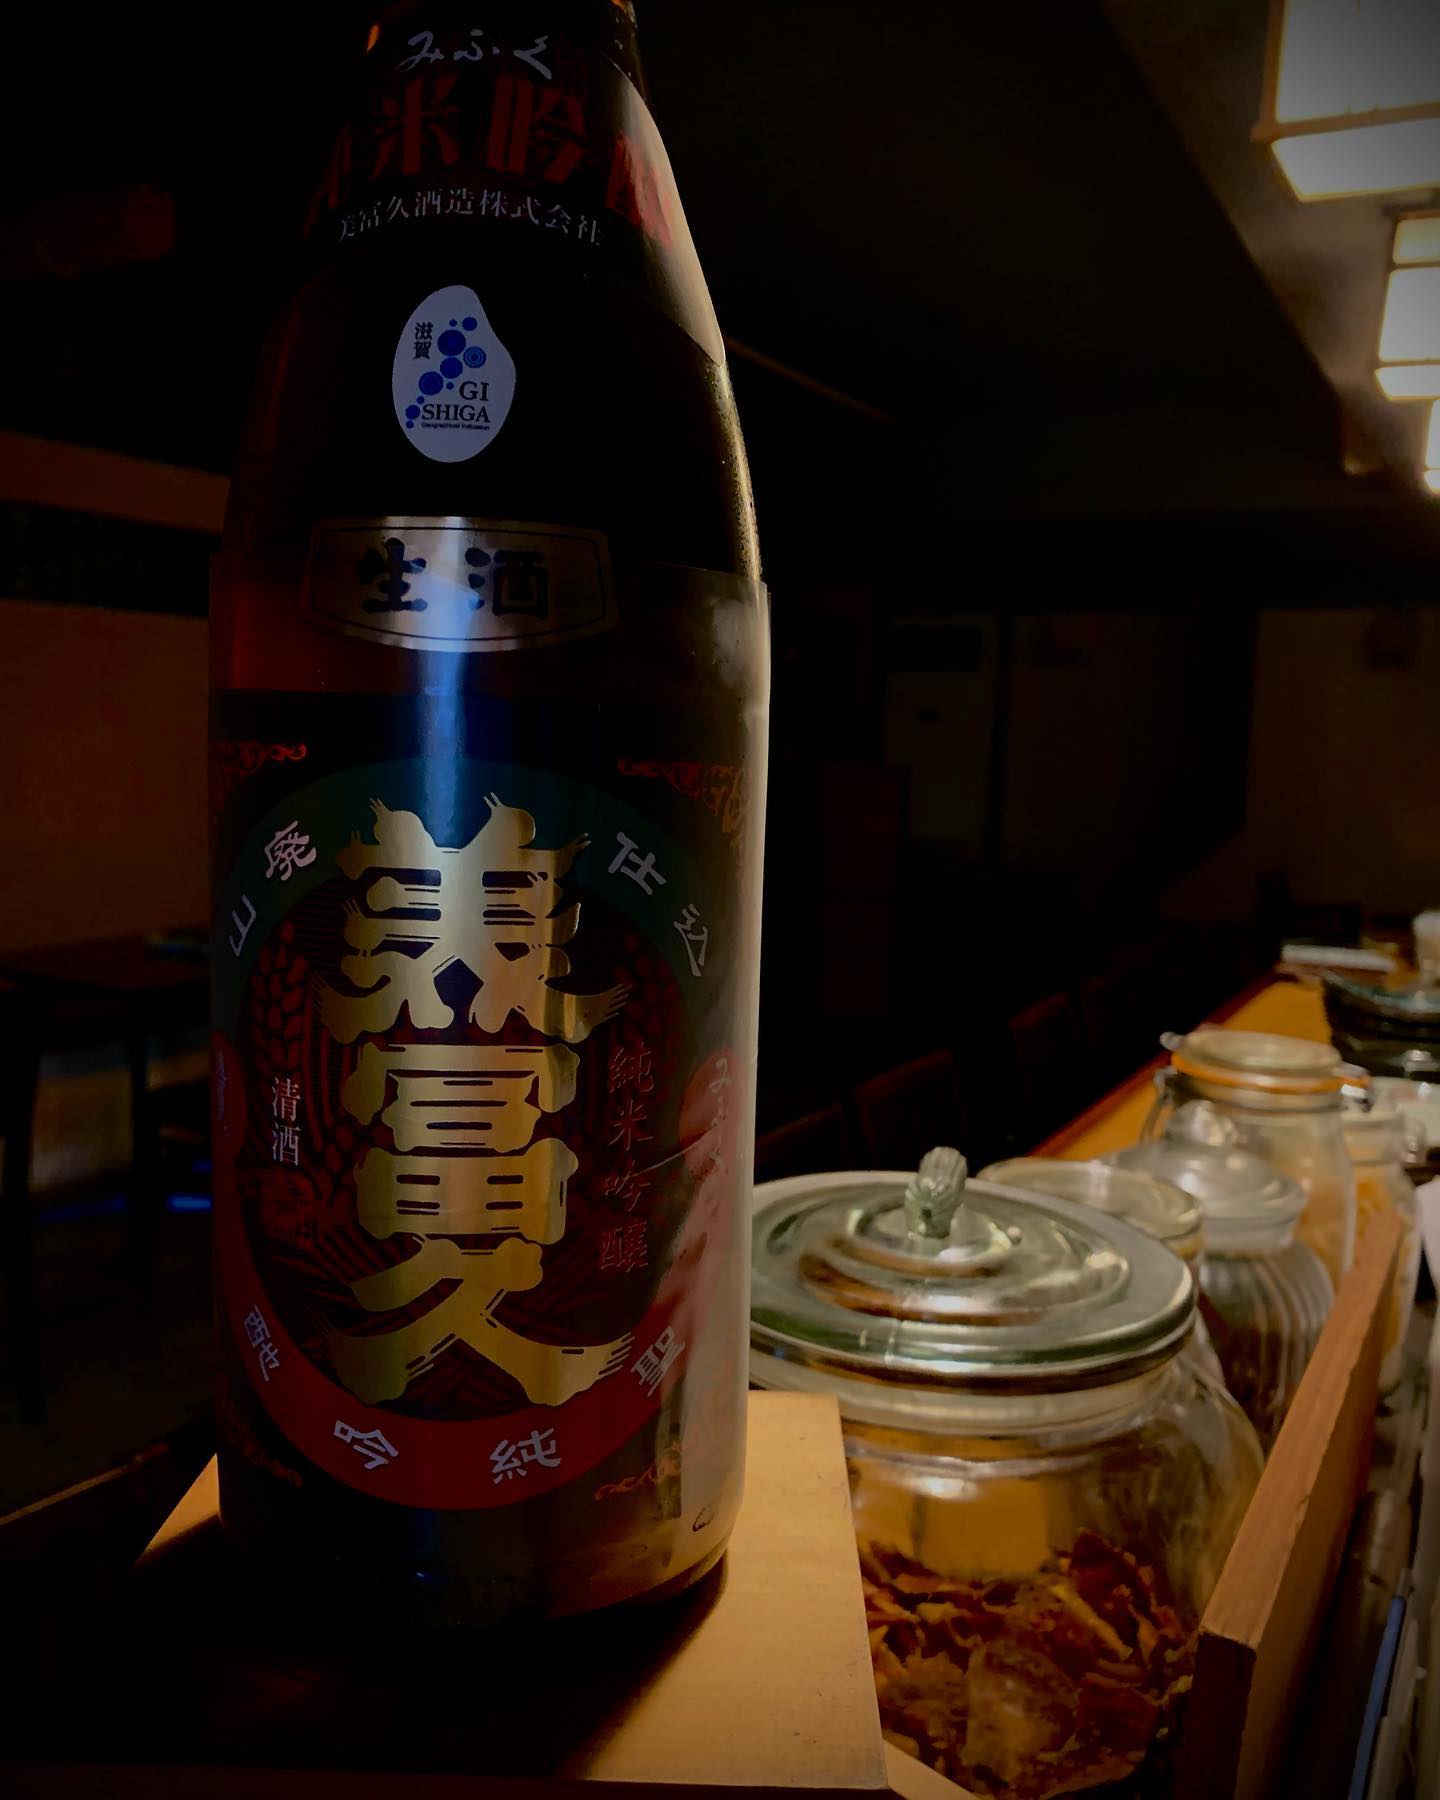 今日の日本酒紹介️
「美冨久」

このお酒は山廃仕込ならではのコクと深み、米の旨味を十分引き出した味わいと、吟醸仕込によるフルーティーな吟醸香と爽やかさ、を同時に楽しめます。
 # #